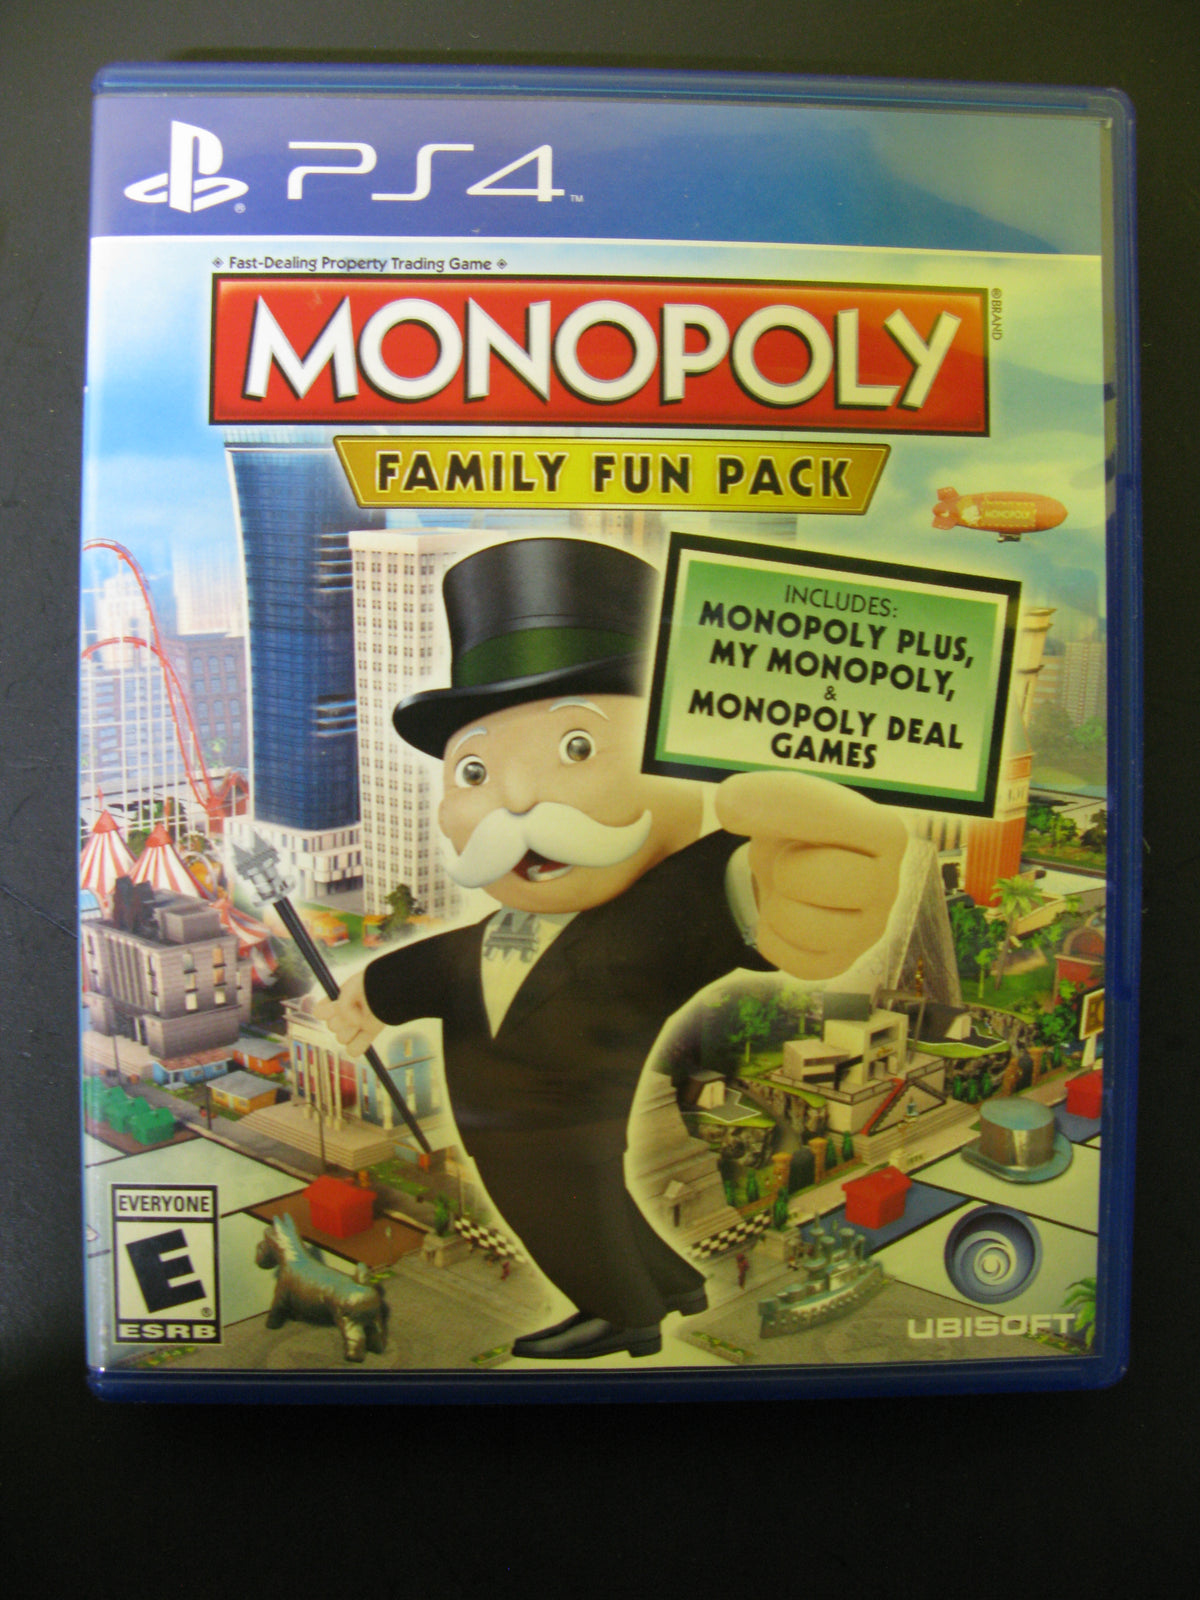 PS4 Monopoly The Pop Culture Antique Museum